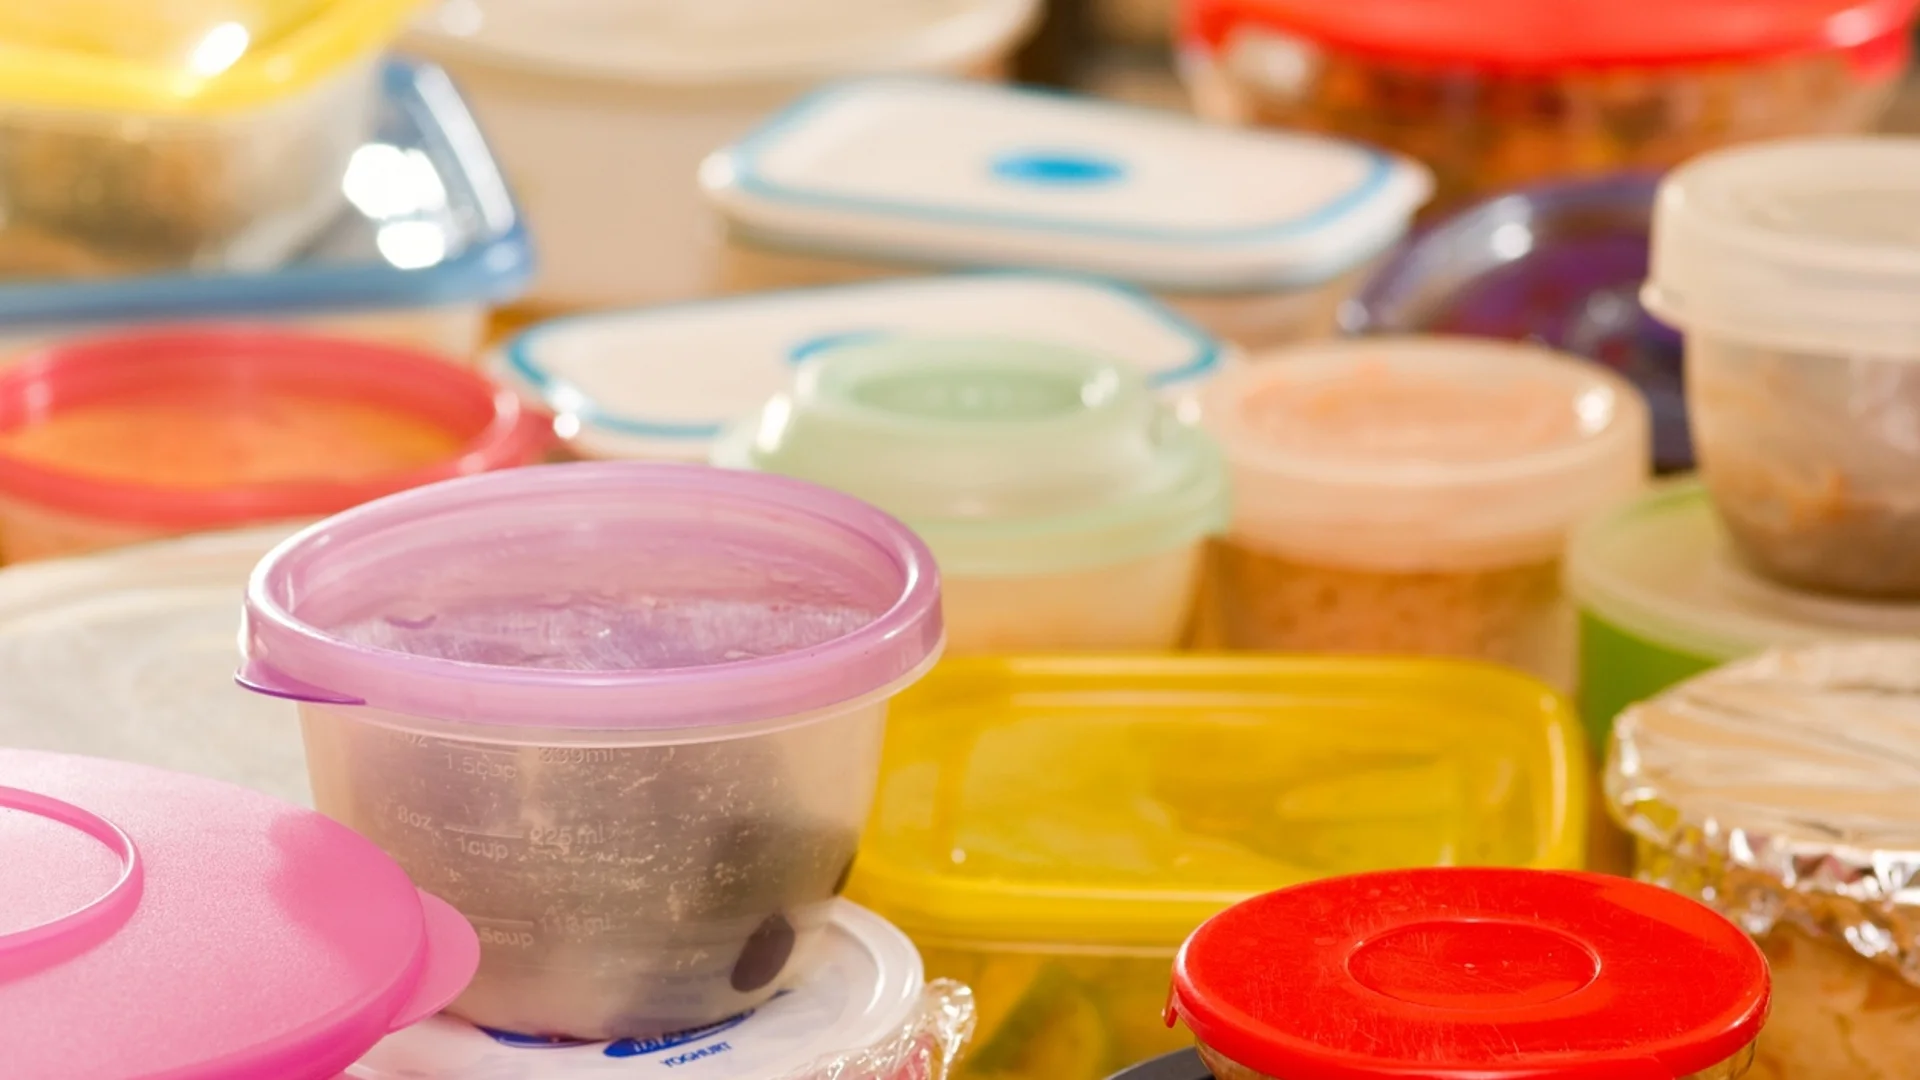 Проучване: В 84 от общо 85 храни от супермаркети и заведения се откриват пластмаси